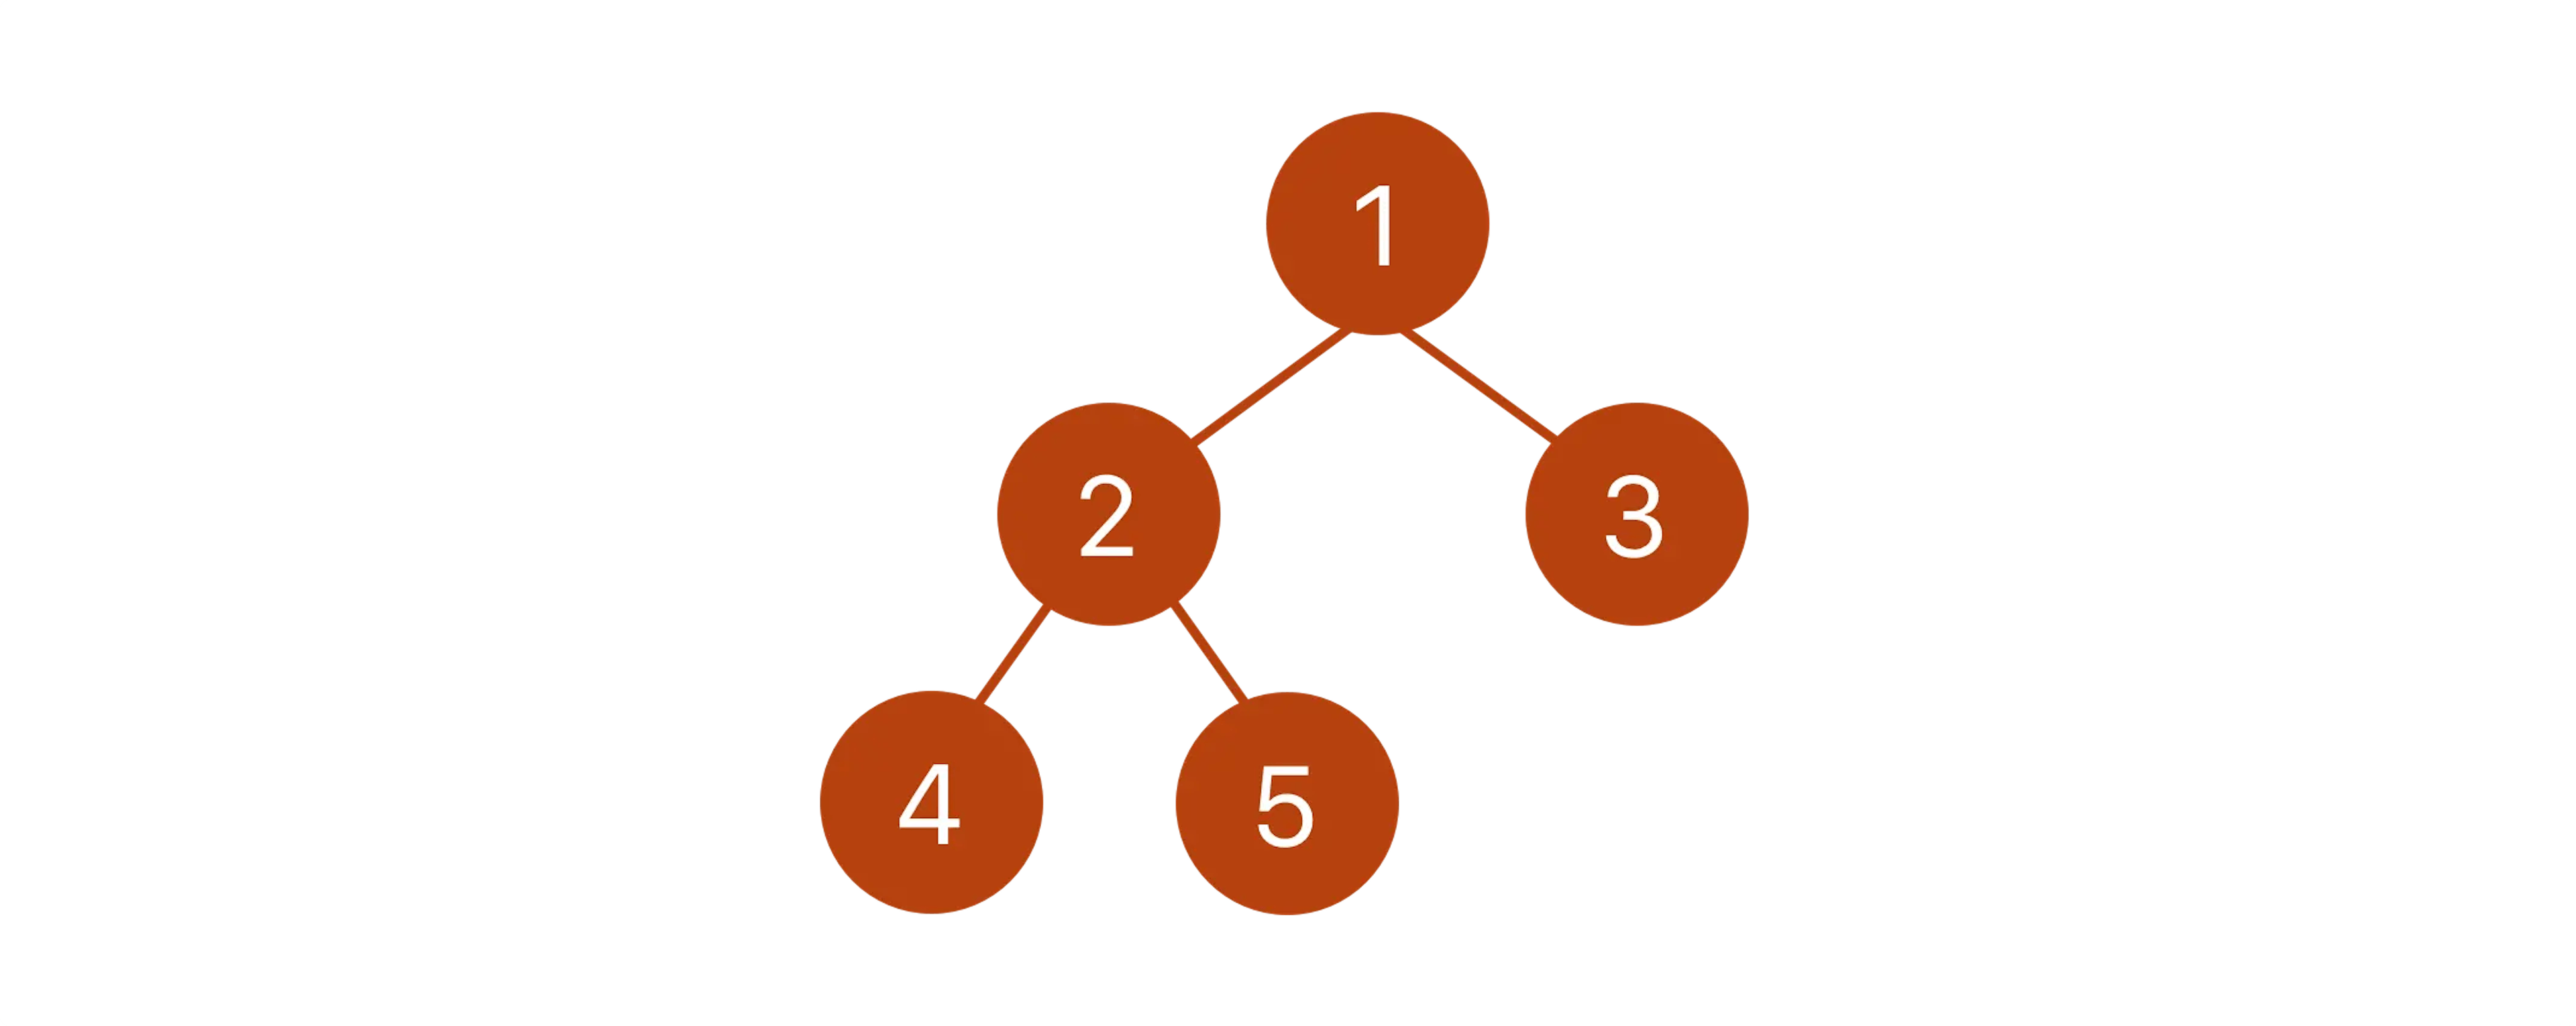 Un ejemplo simple de árbol binario